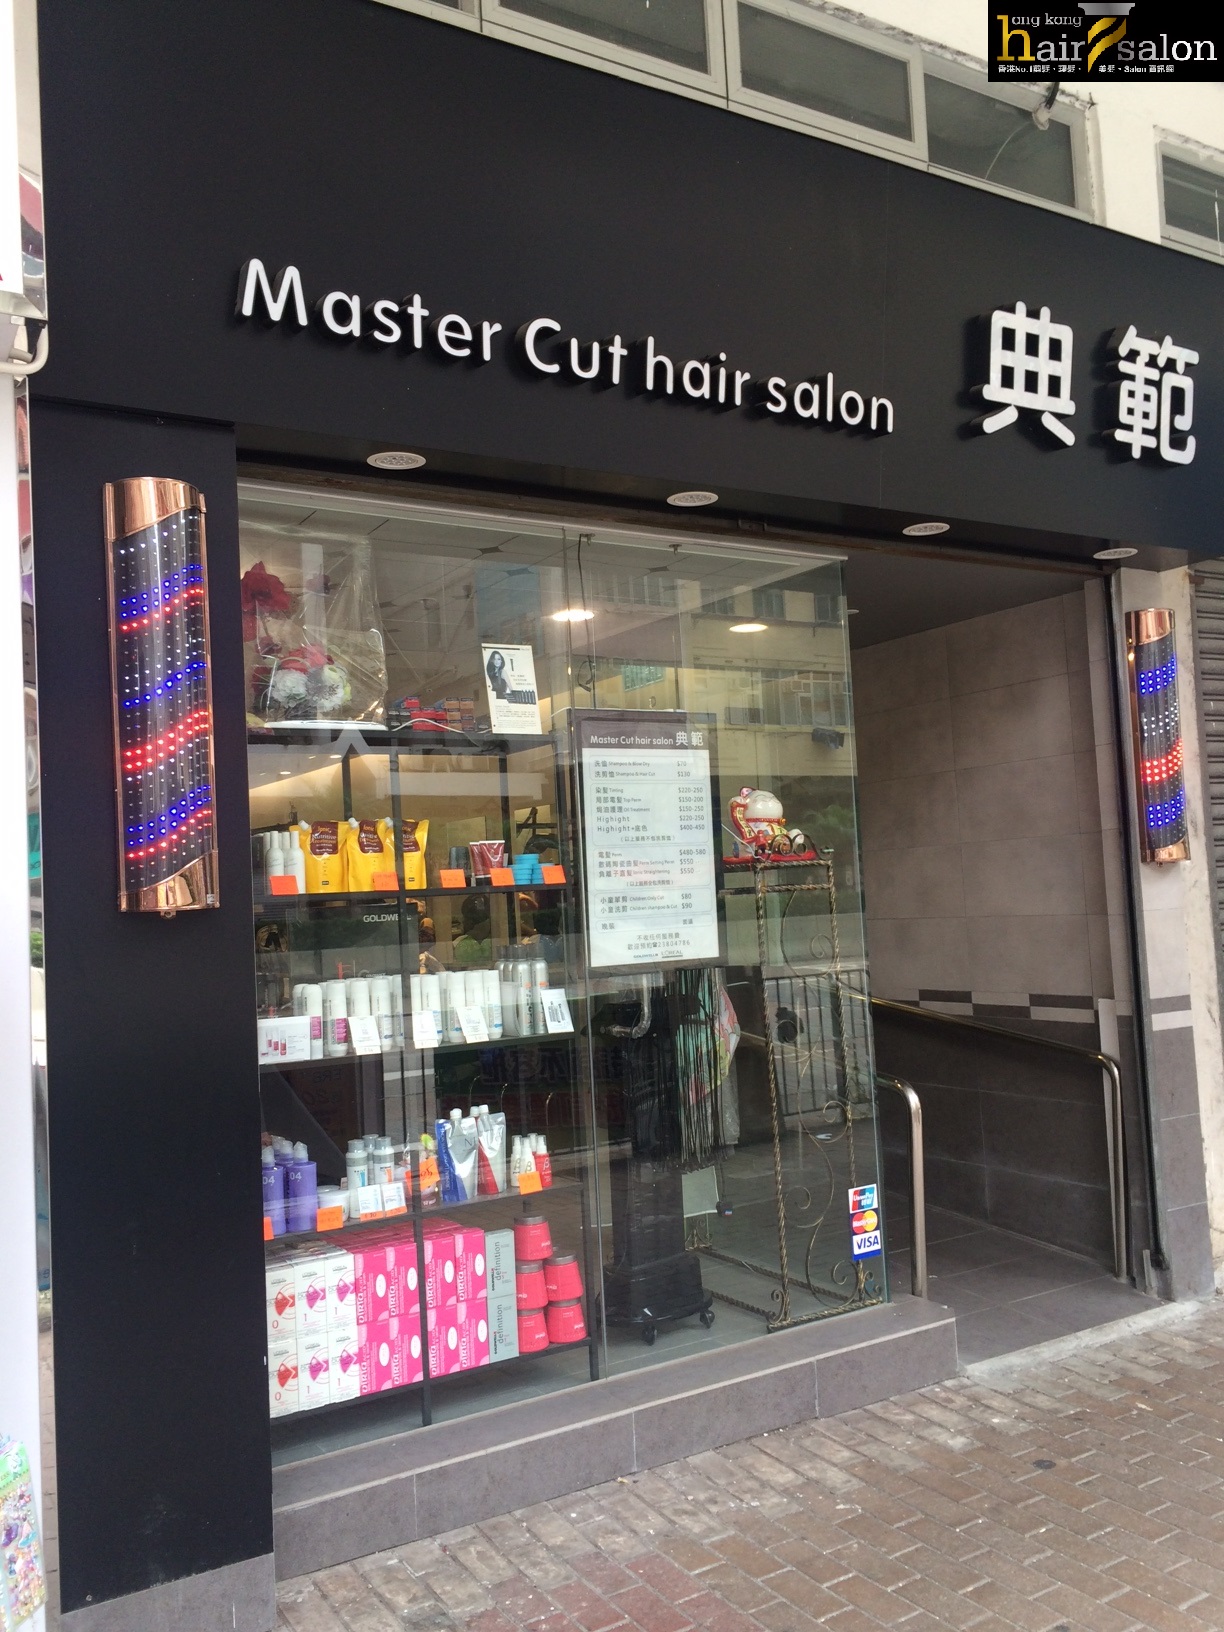 髮型屋: 典範 Master Cut Hair Salon